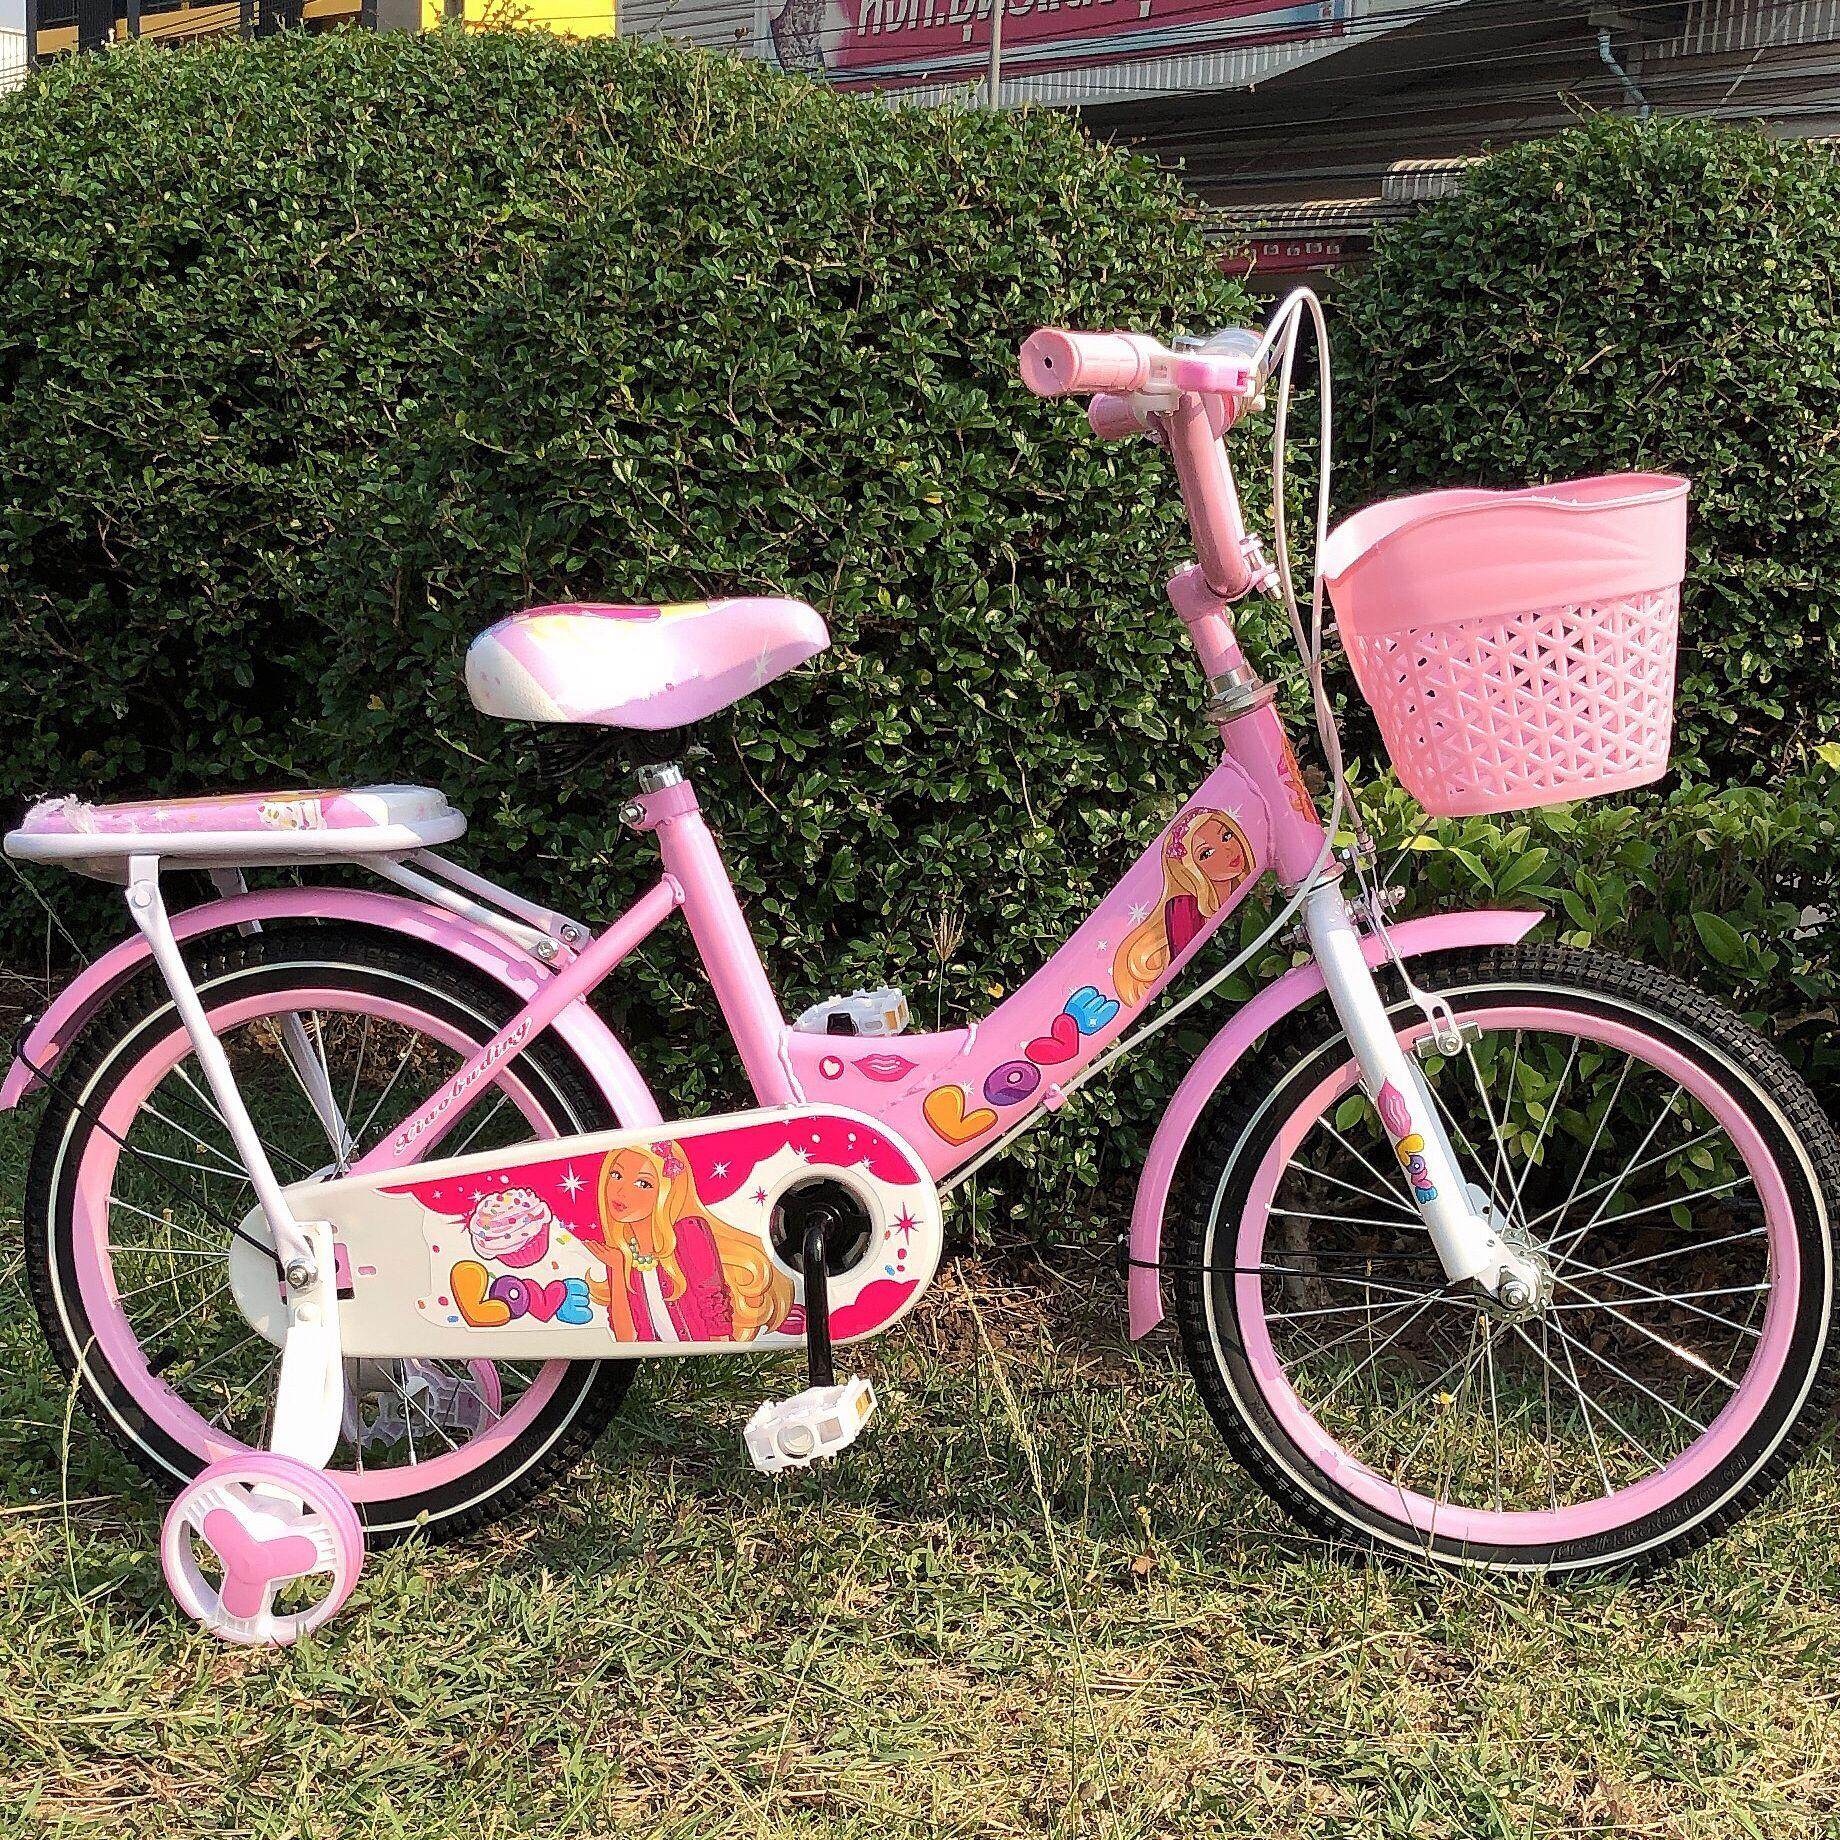 จักรยานเด็ก12นิ้ว เหล็ก ยางเติมลม มีตะกร้า เบาะซ้อนท้าย แถม กระดิ่ง เหมาะกับเด็ก2-4 ขวบ สีชมพูPink Bicycle ( Girl )